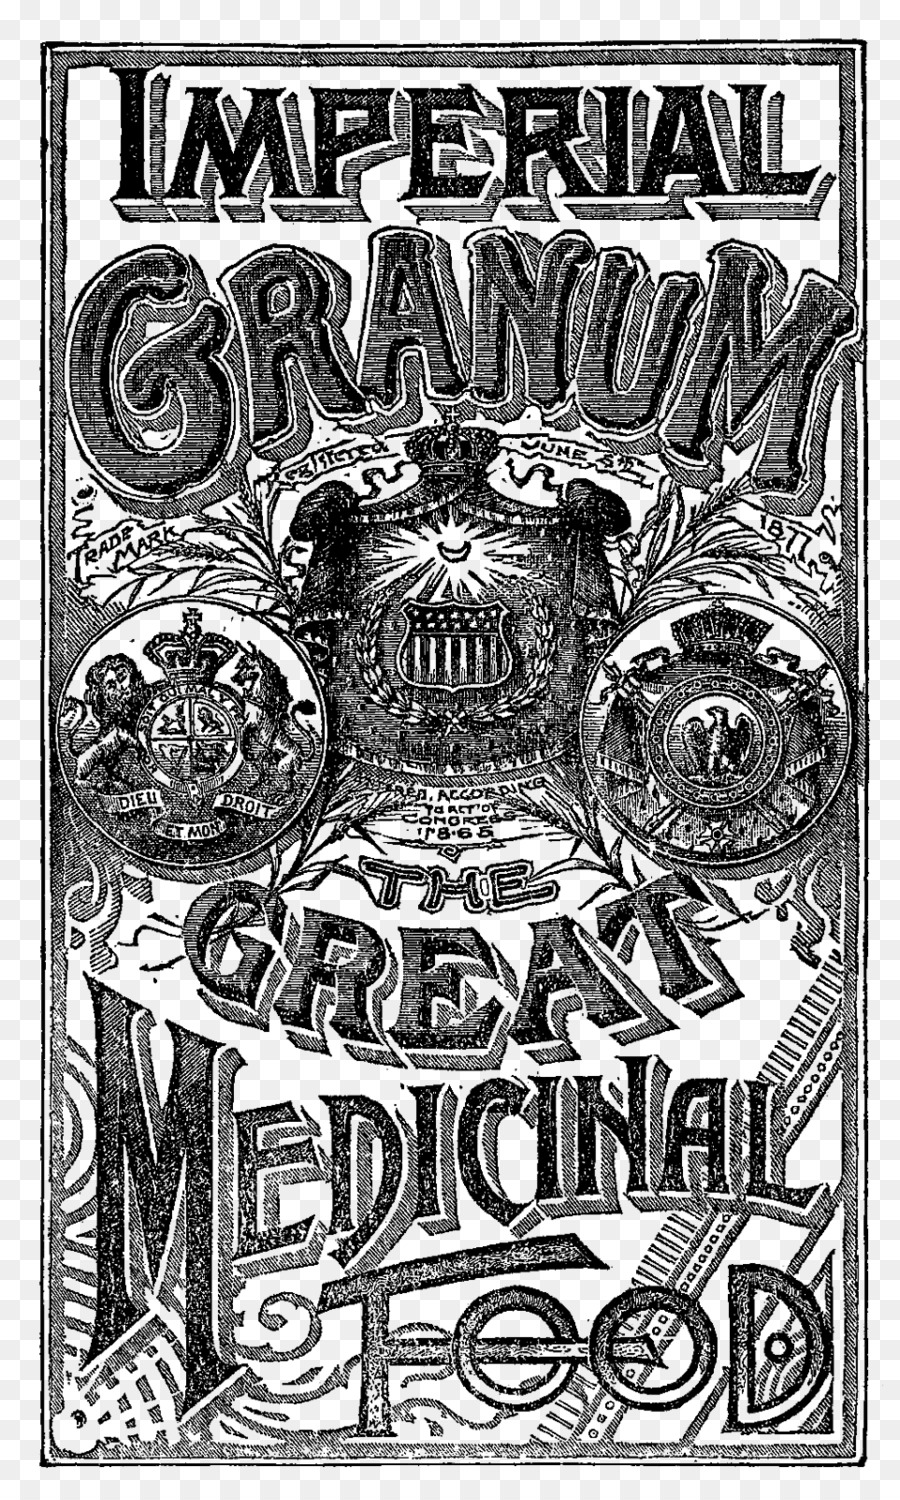 Poster Grafica Pubblicitaria epoca Vittoriana Modello - pubblicizzare timbro